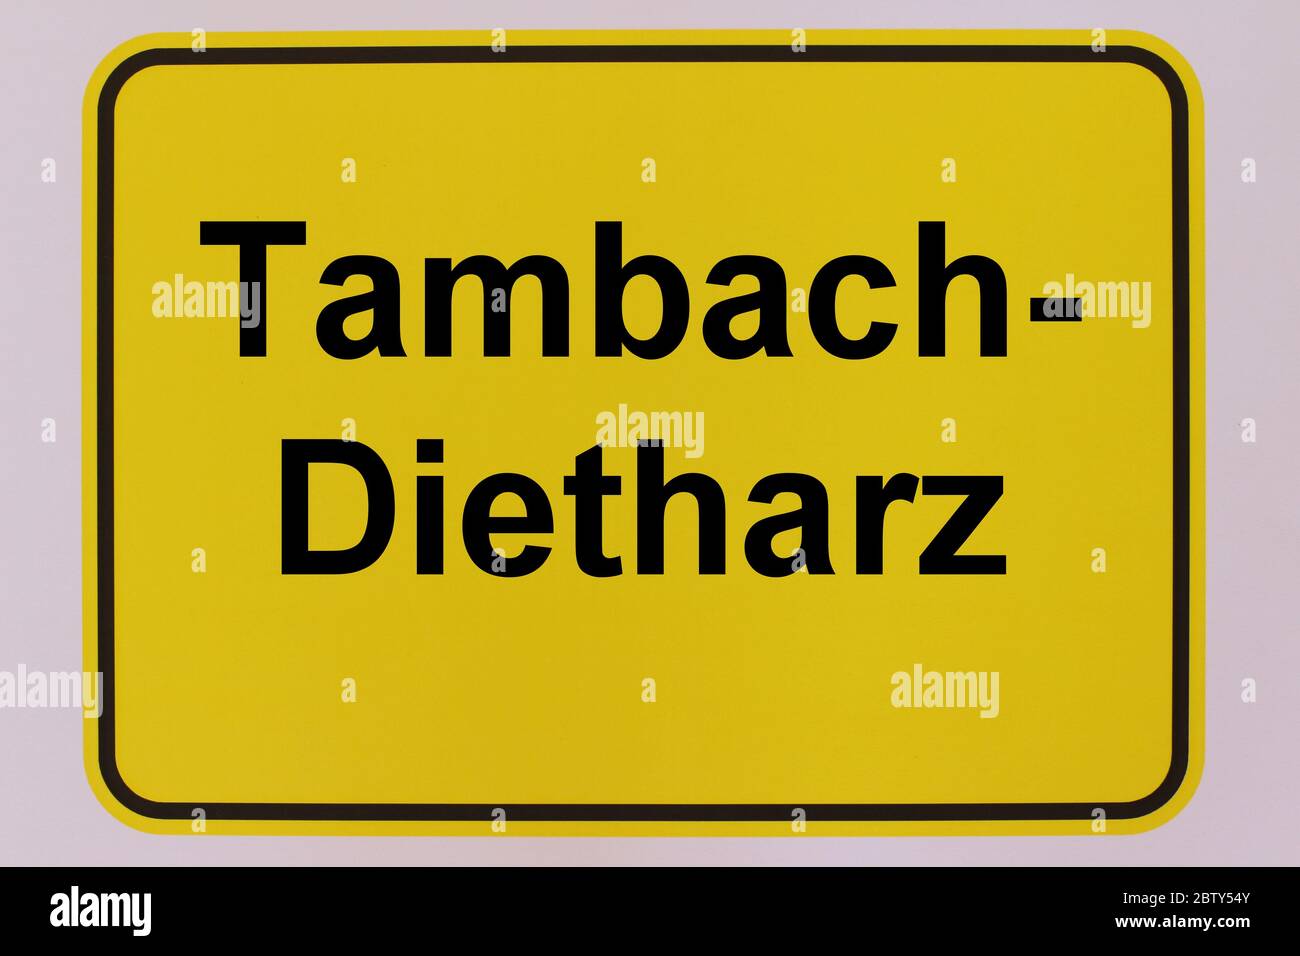 Lady Tambach-Dietharz